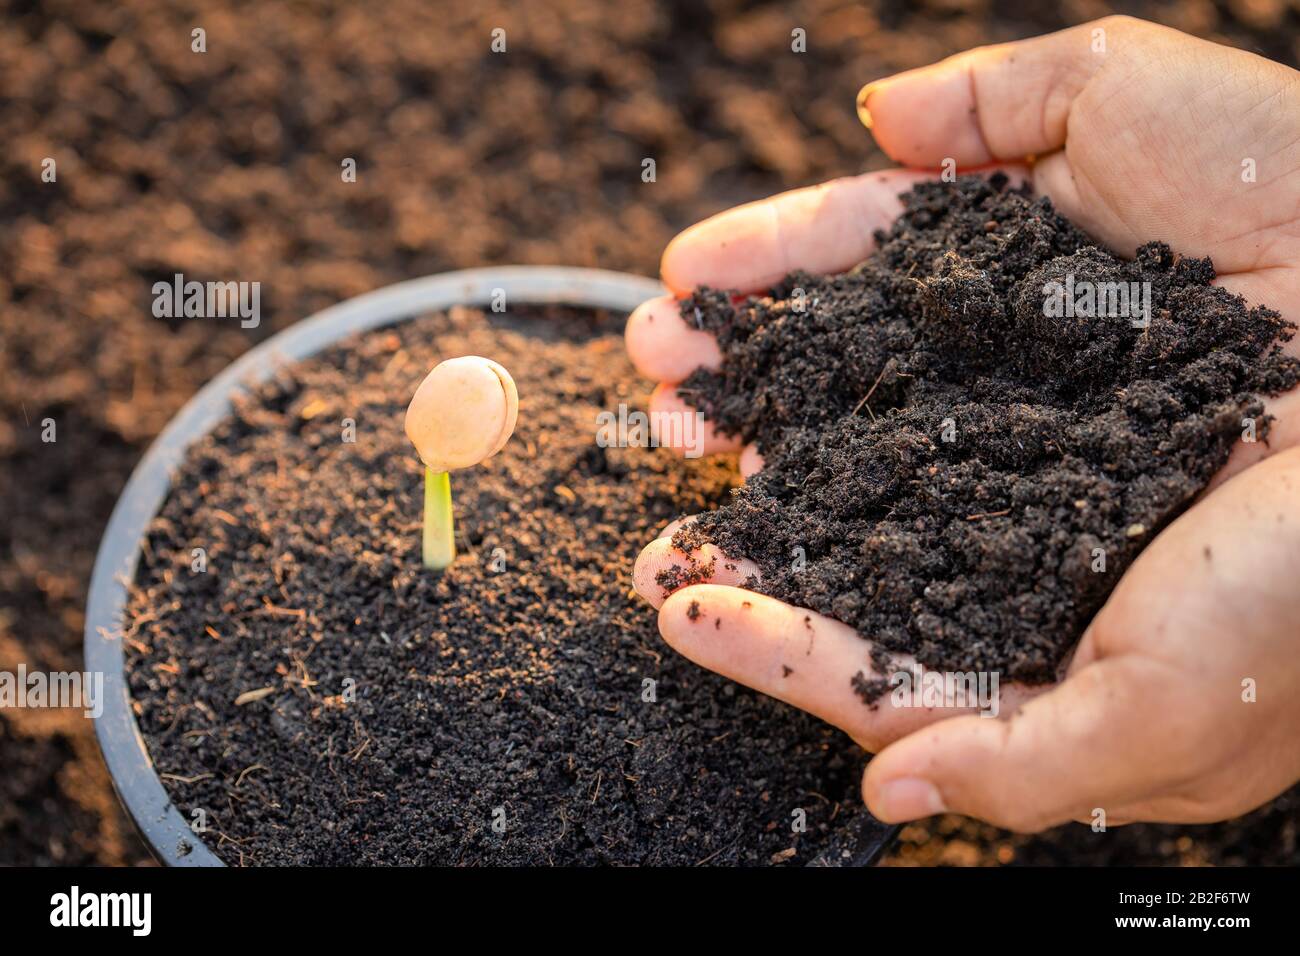 Gros plan de la main de l'agriculteur plantant le jeune germe d'Afzelia, Doussie ou Makha mong arbre dans le sol. Concept de croissance et d'environnement Banque D'Images